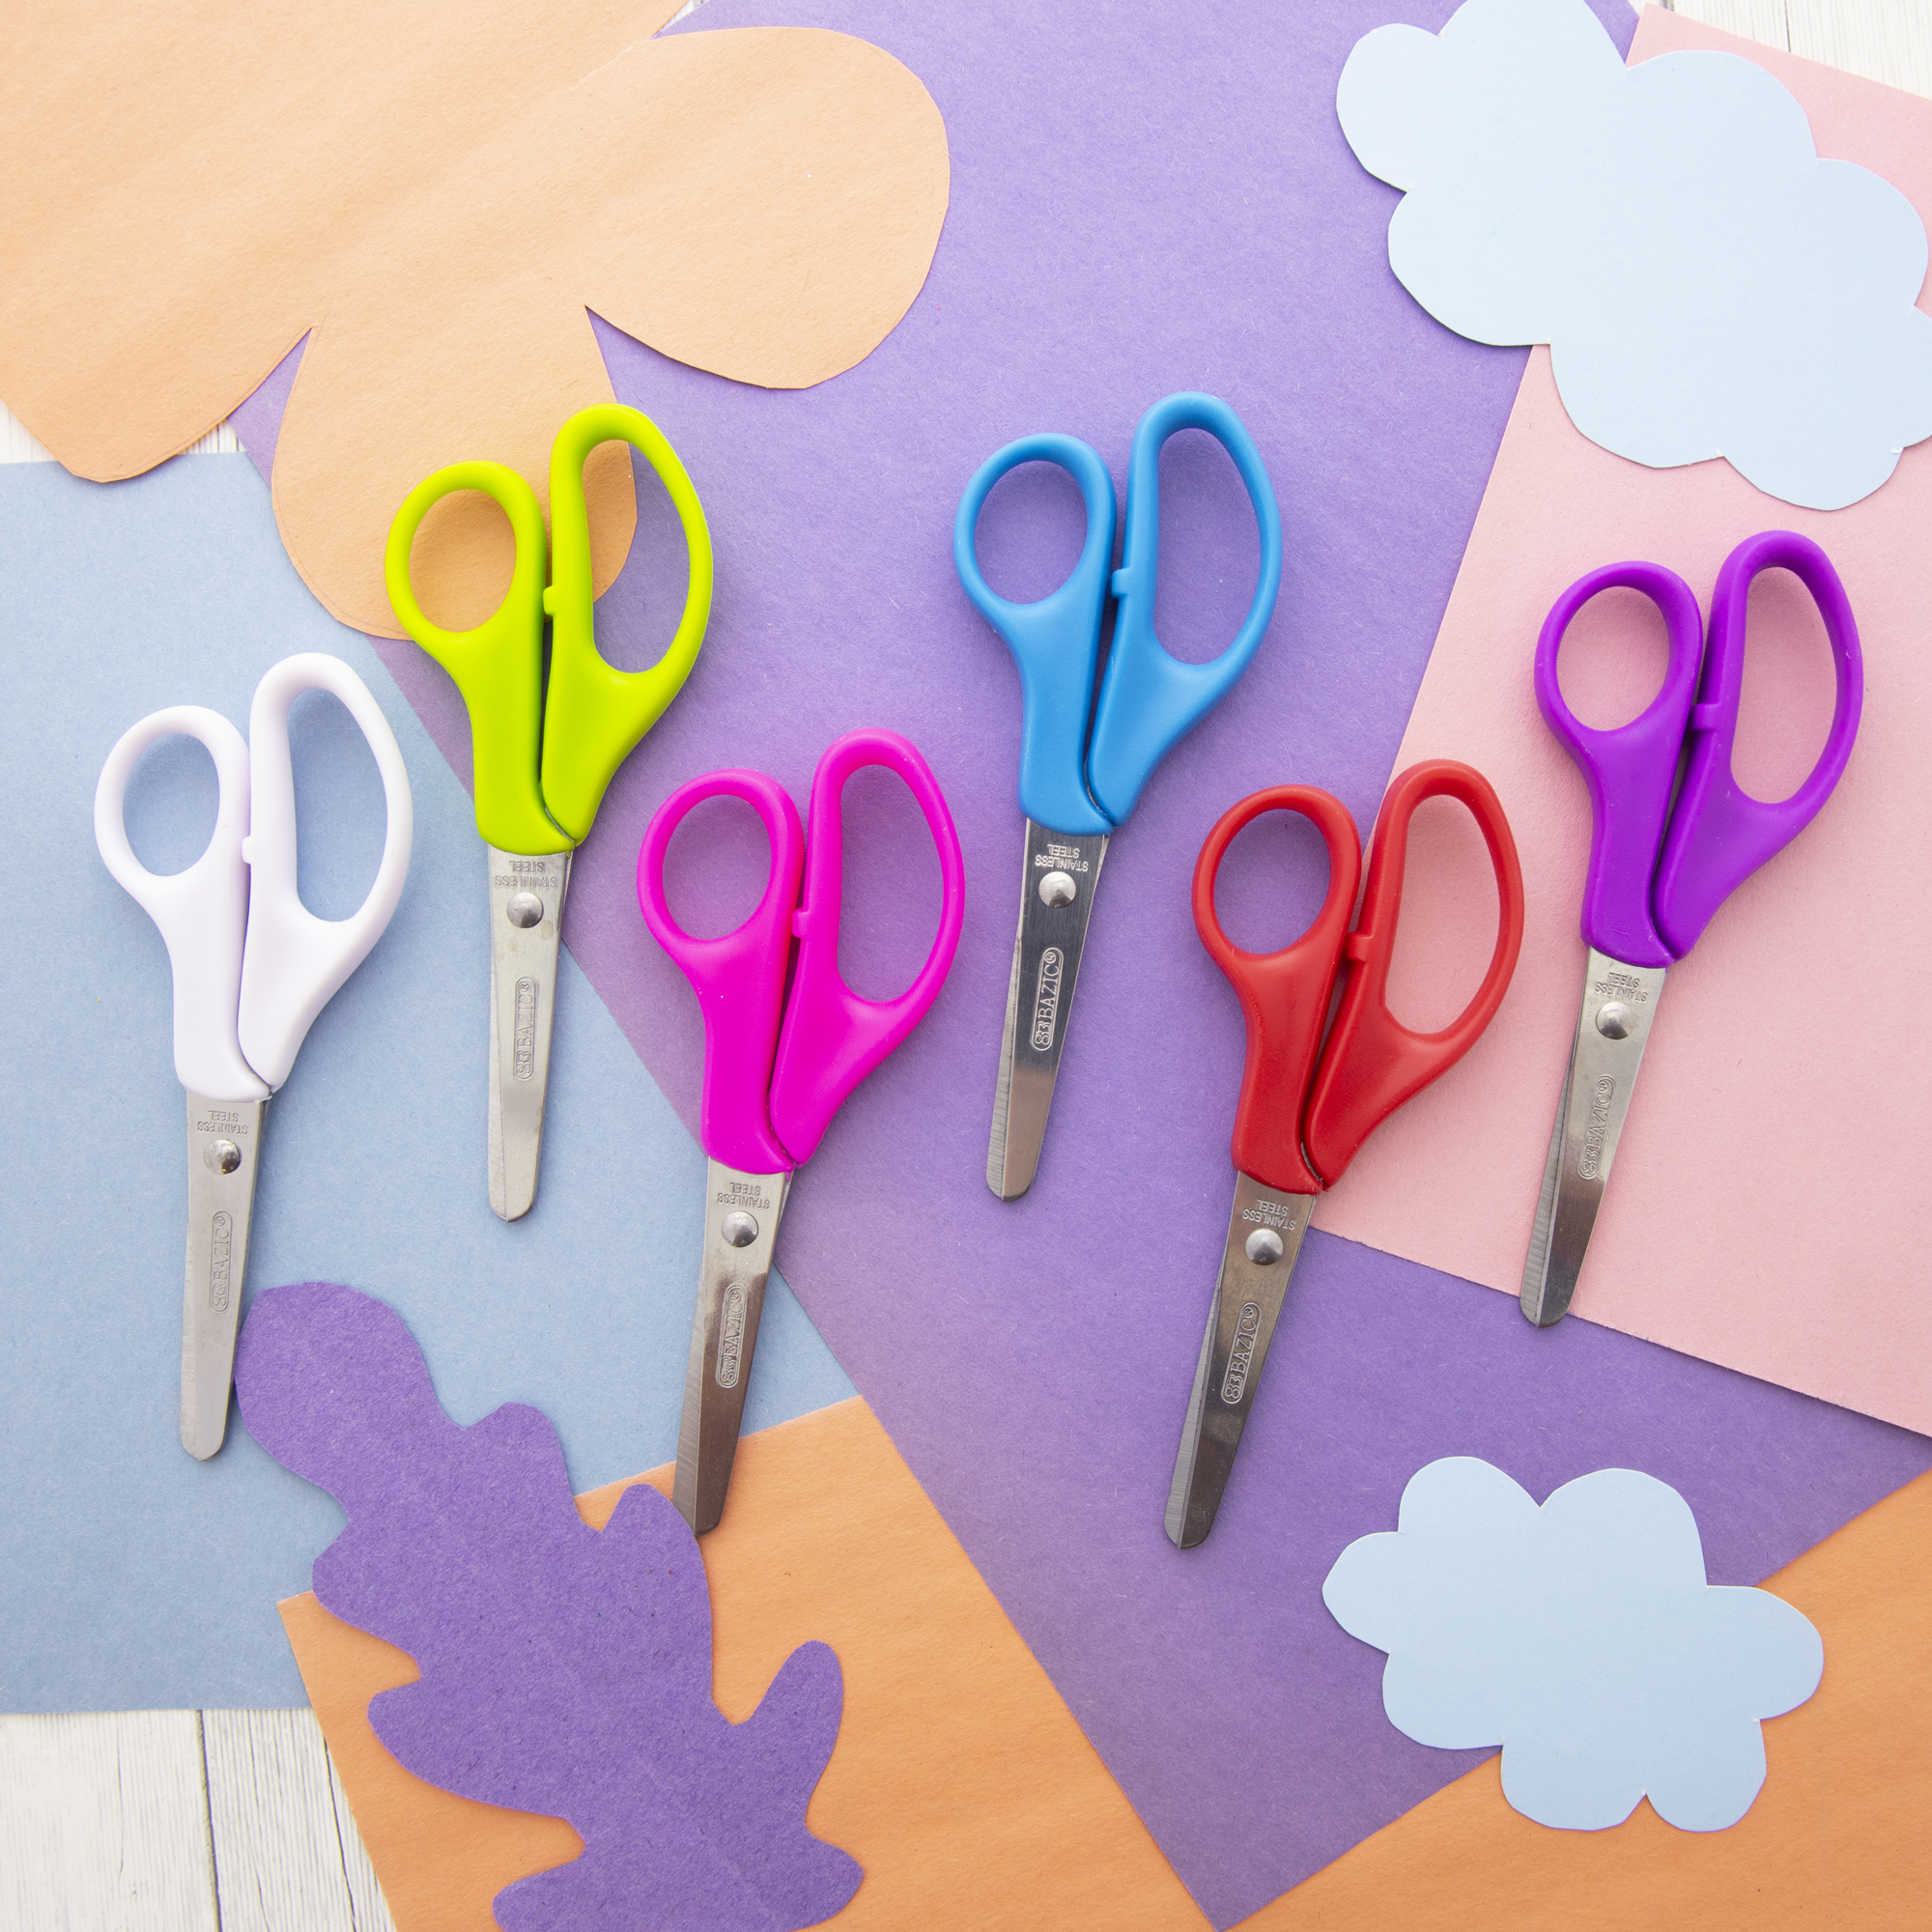 School Scissors With A Blunt Tip